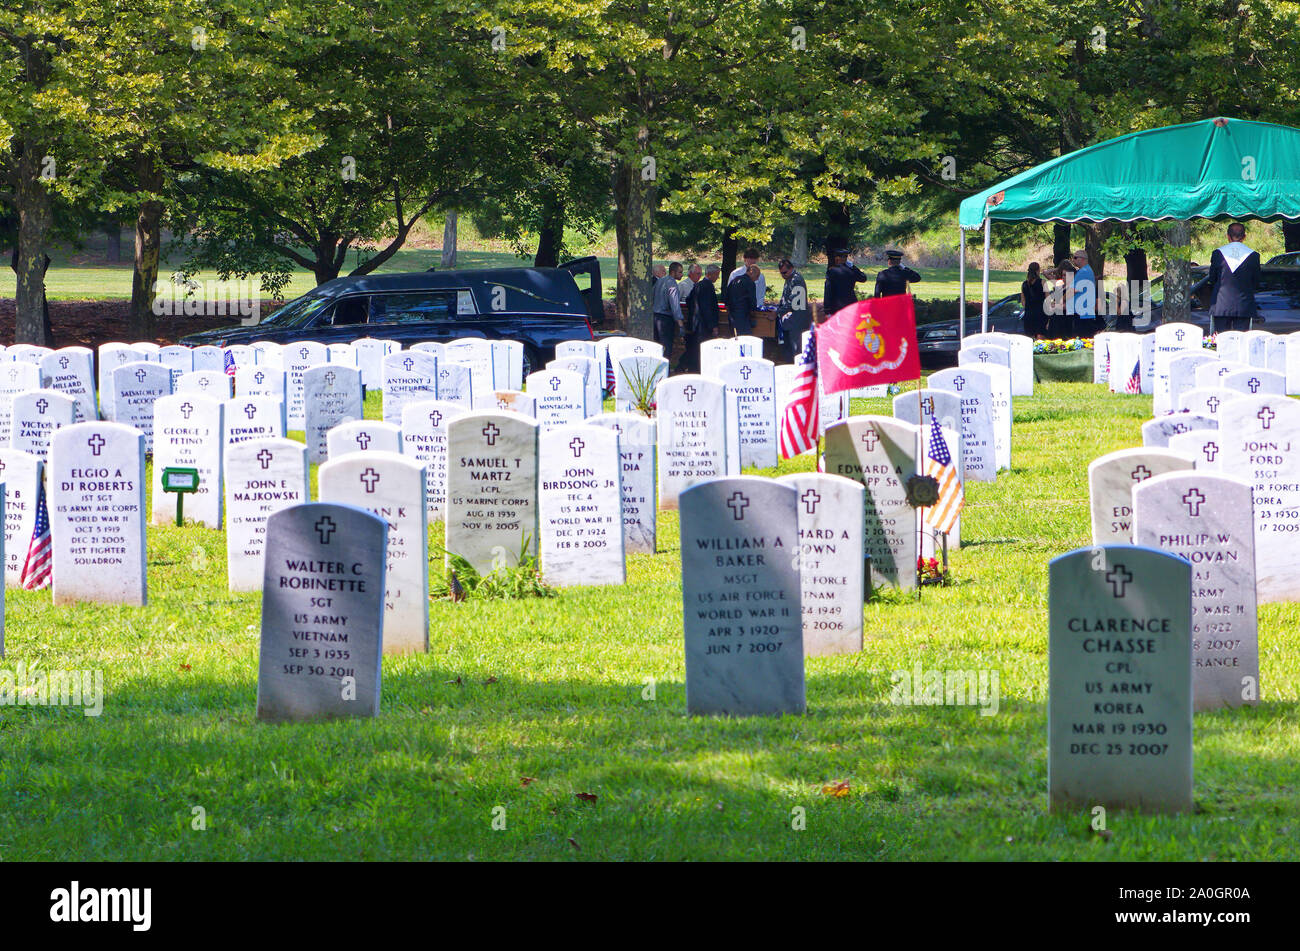 Middletown, CT, USA. Aug 2013. Partió siendo veterano enterrado con todos los honores militares en uno de los tantos cementerios estatales para veteranos en todo el país. Foto de stock